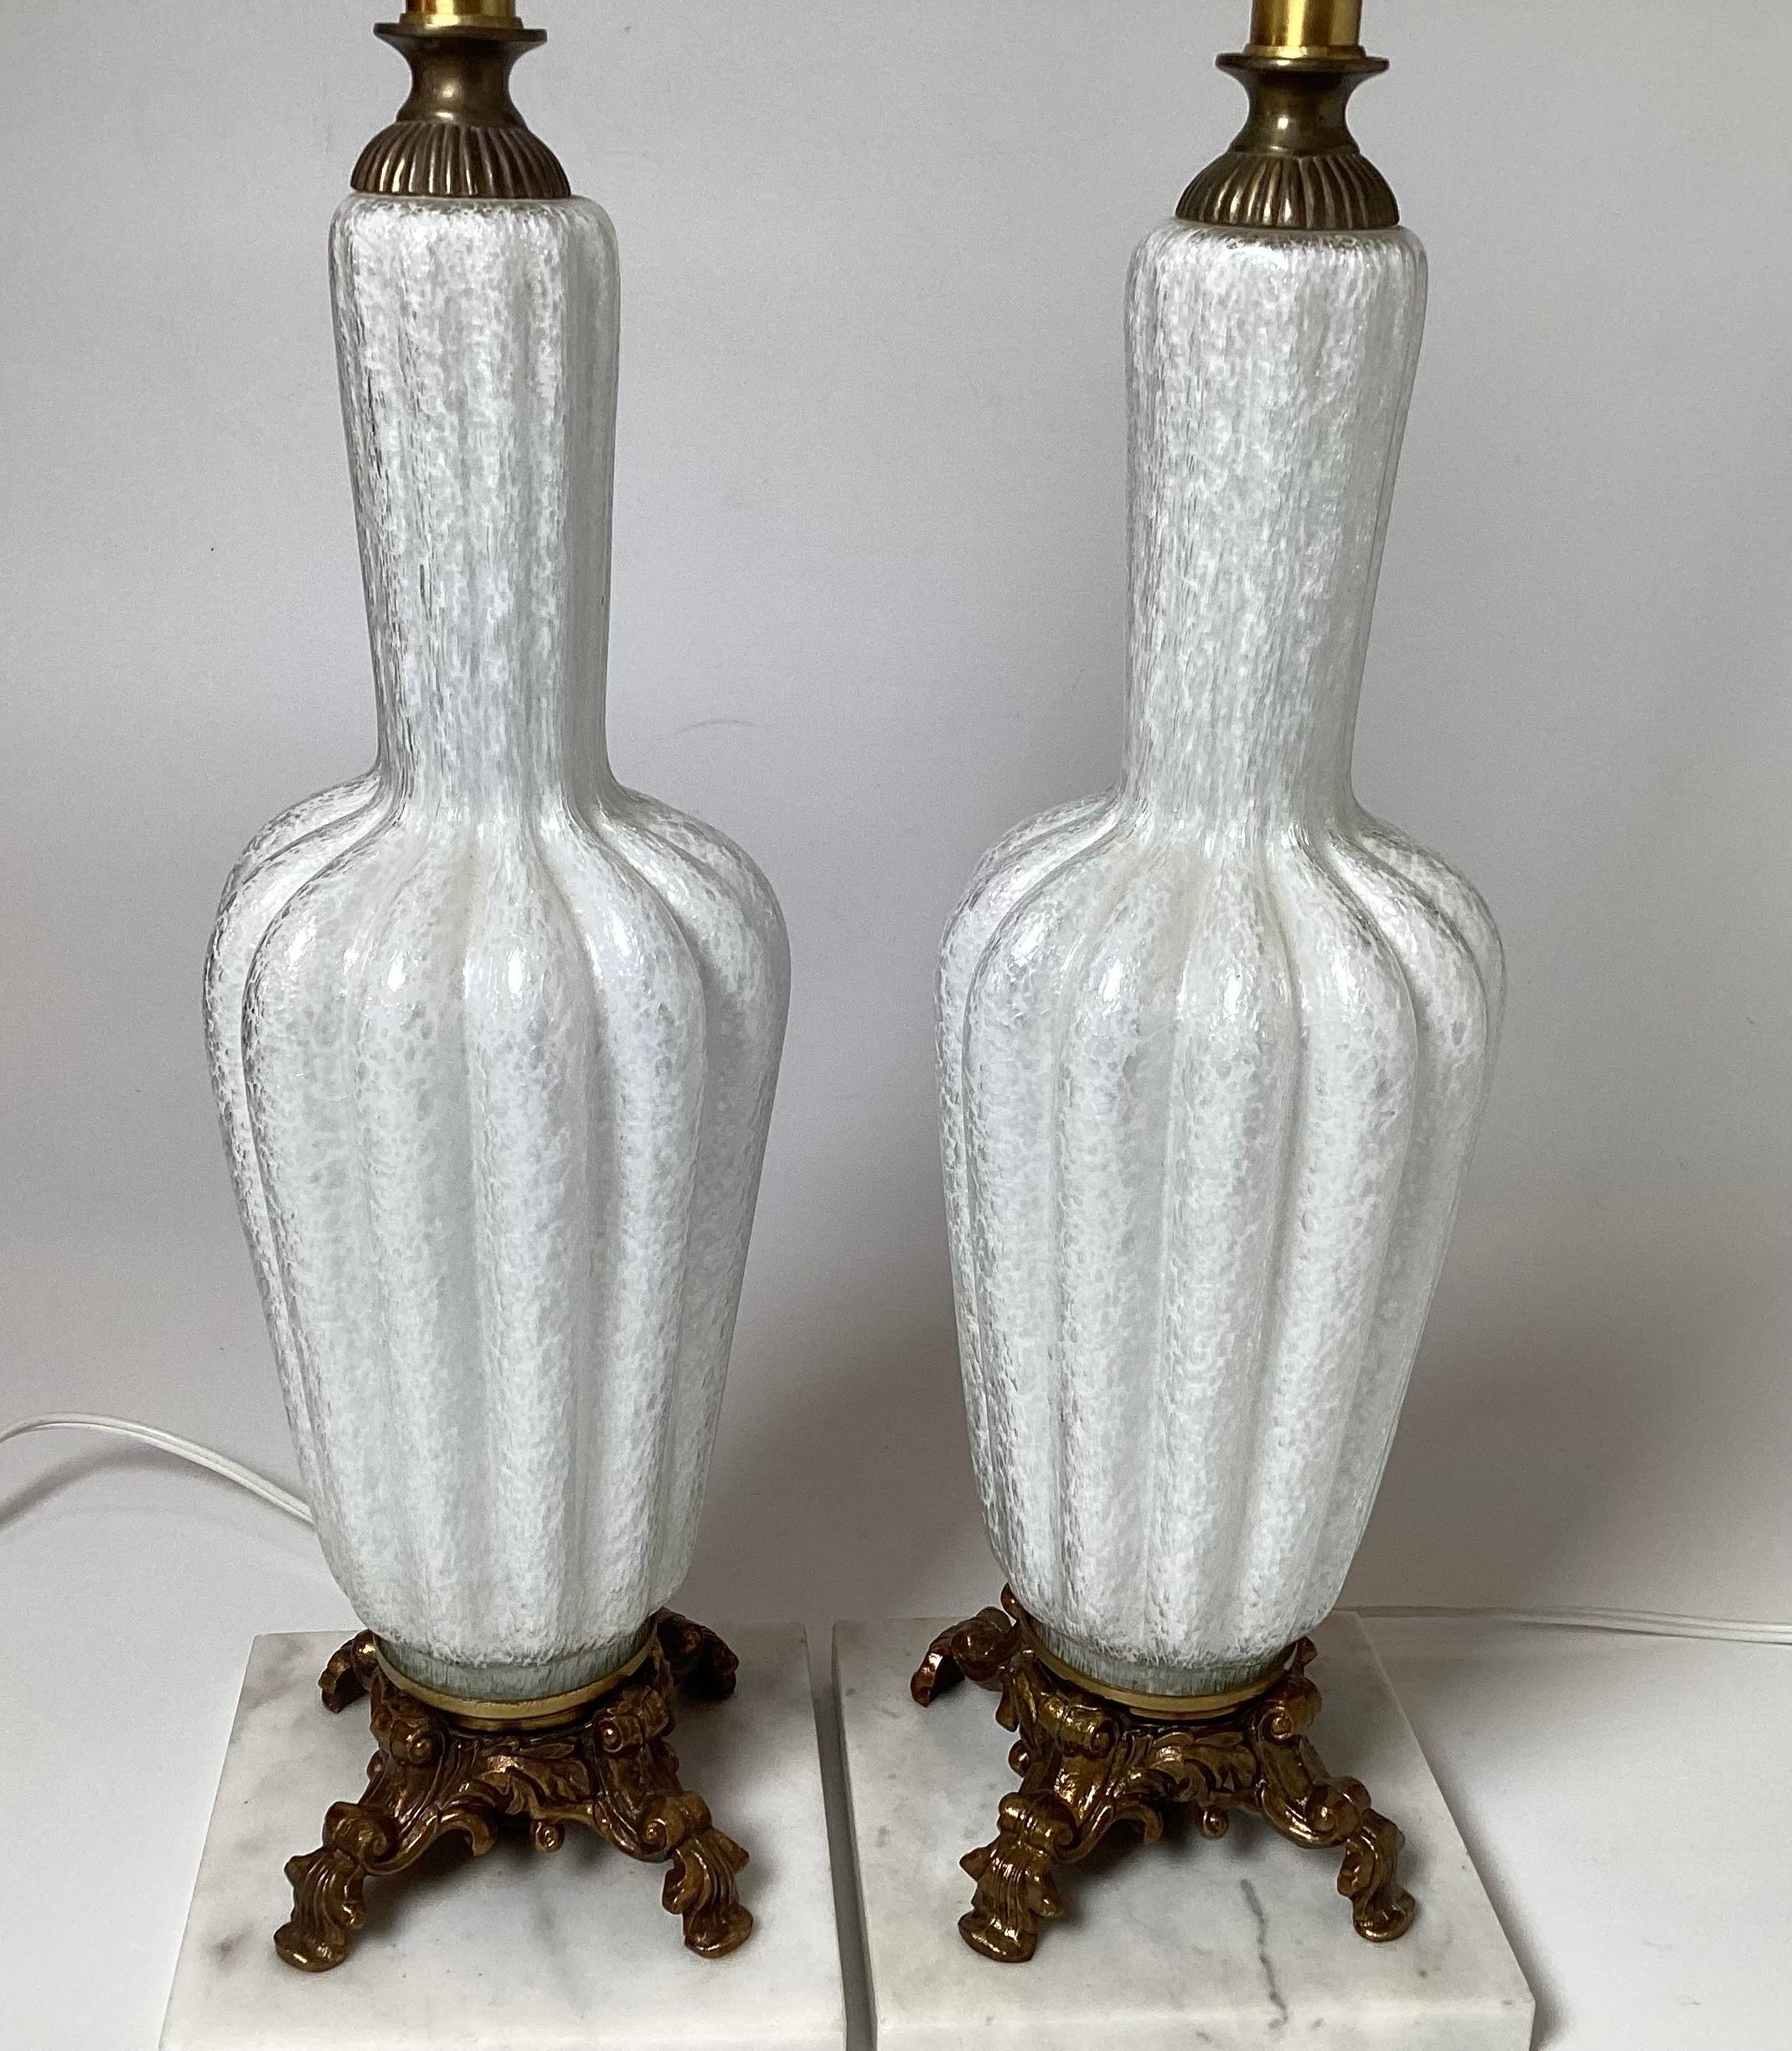 Ein Paar gerippte Flaschenform Murano Italien Tischlampen.  Das weiße und klare Glas mit Messinggussfüßen ruht auf einem quadratischen Sockel aus Carrera-Marmor. Kürzlich neu verkabelt.  20,5 Zoll groß.  